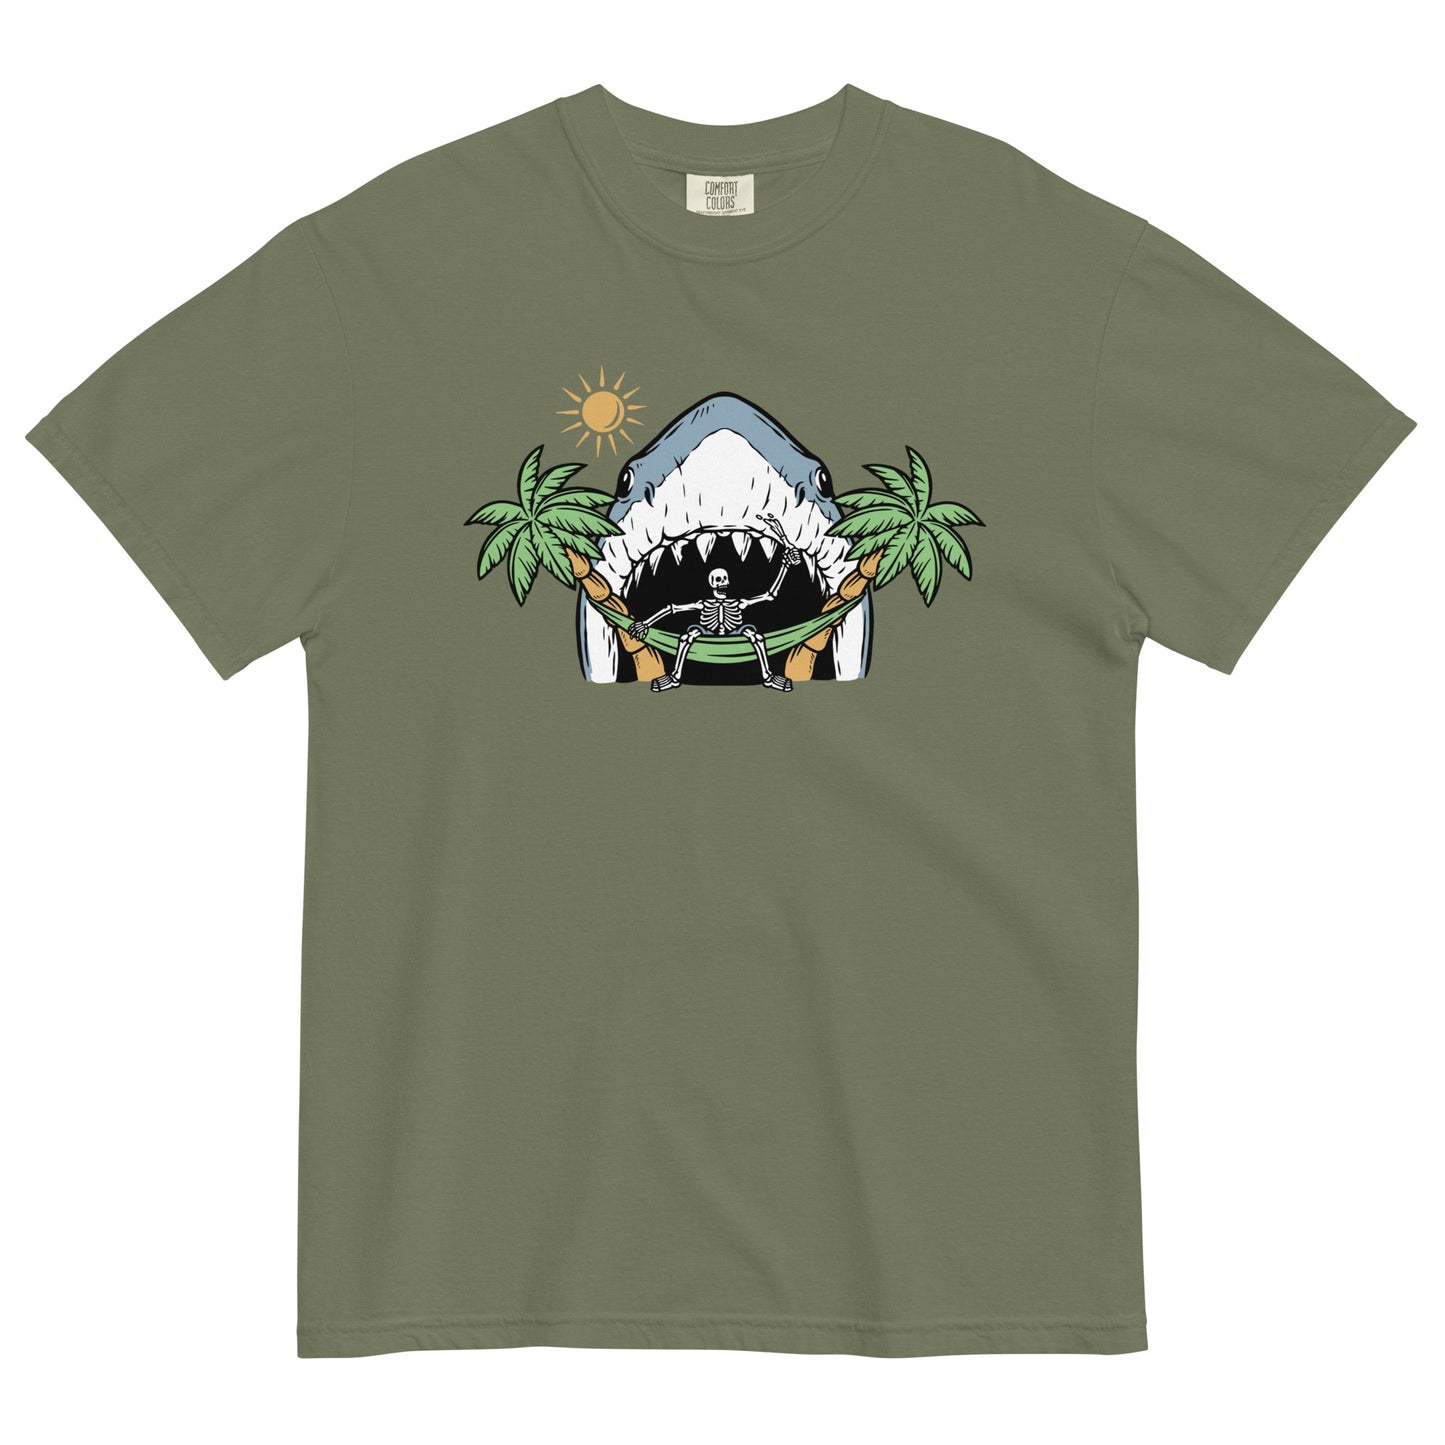 Sharky t-shirt